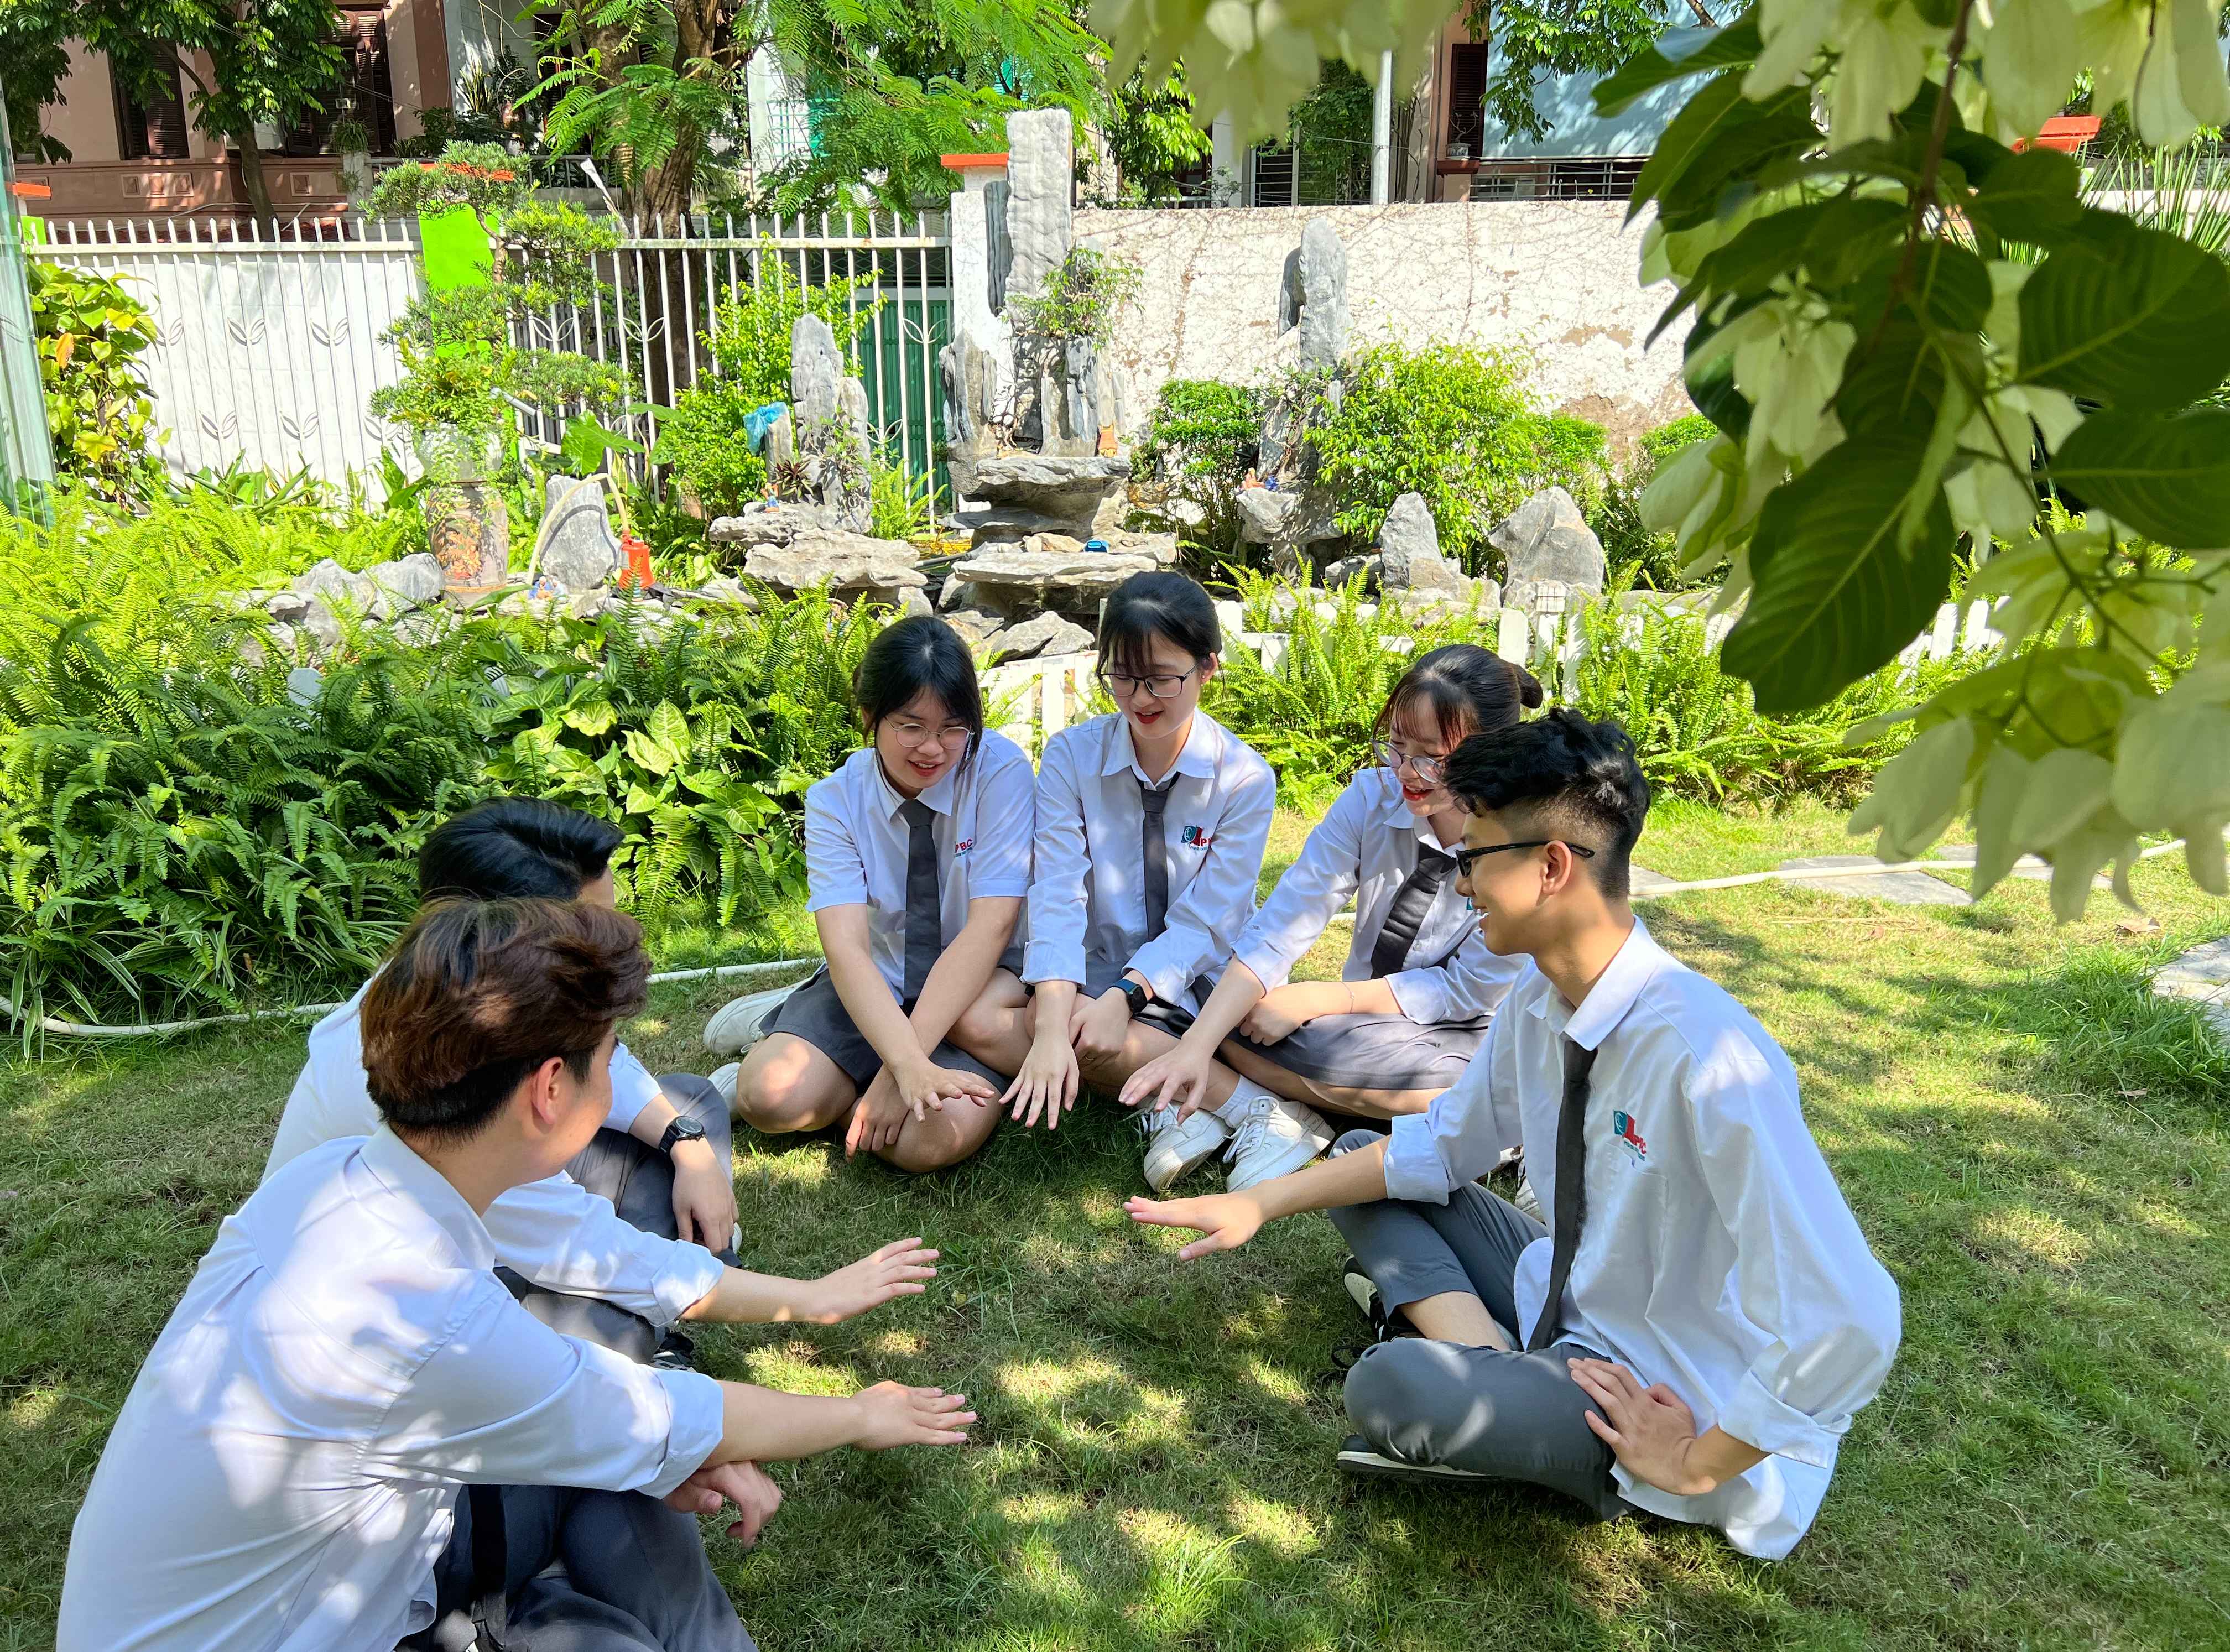 Vượt qua áp lực, sẵn sàng cho các kỳ thi lớn của học sinh lớp 12 trường THPT Phan Bội Châu, Hà Nội